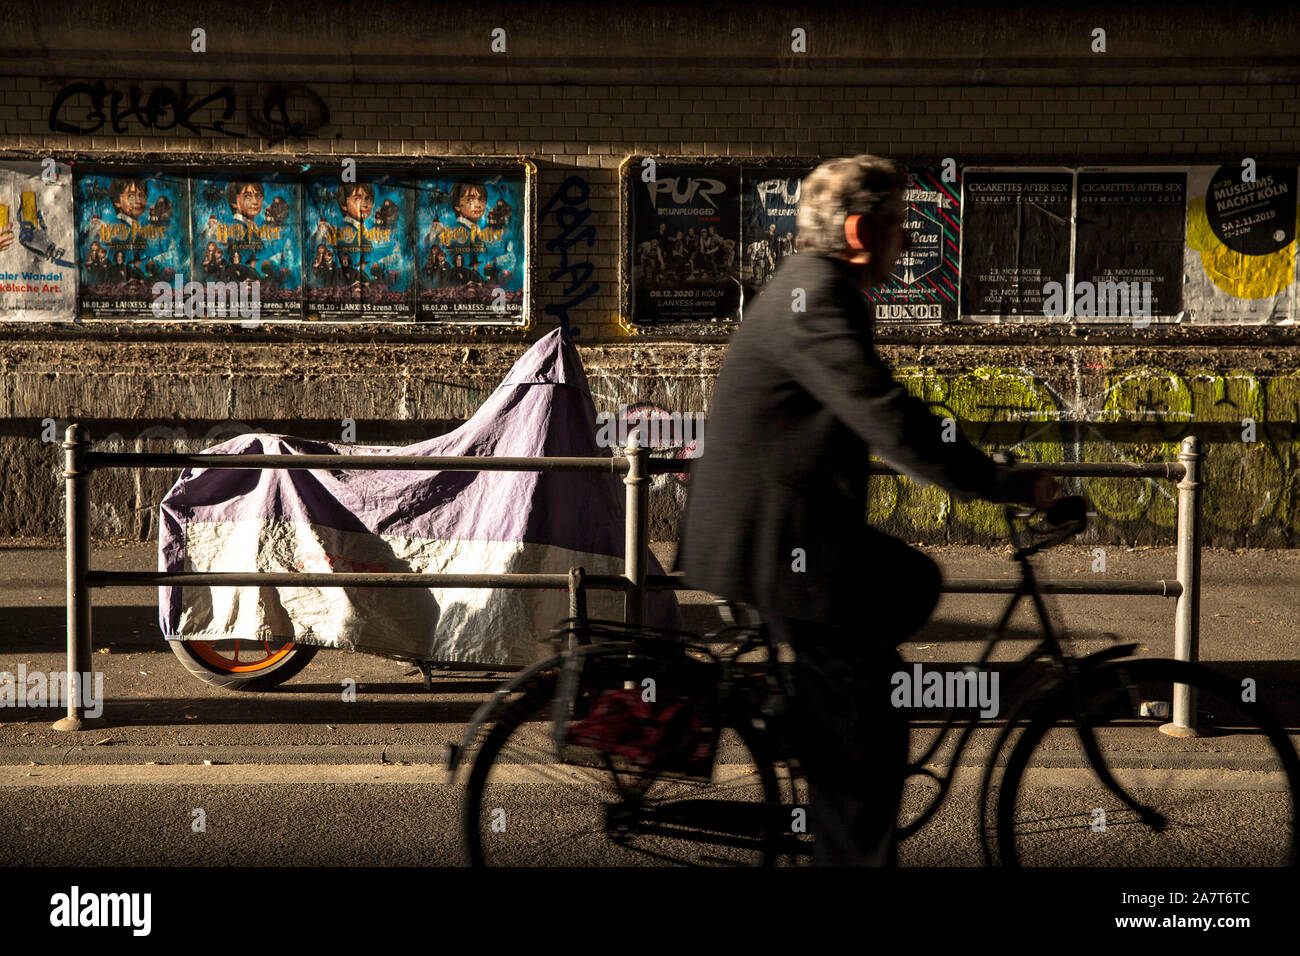 Geparkte Motorrad abgedeckt mit einer Plane steht auf der Straße Gereonswall im Stadtteil Neustadt-Nord, Köln, Deutschland ein geparktes Motorrad m Stockfoto